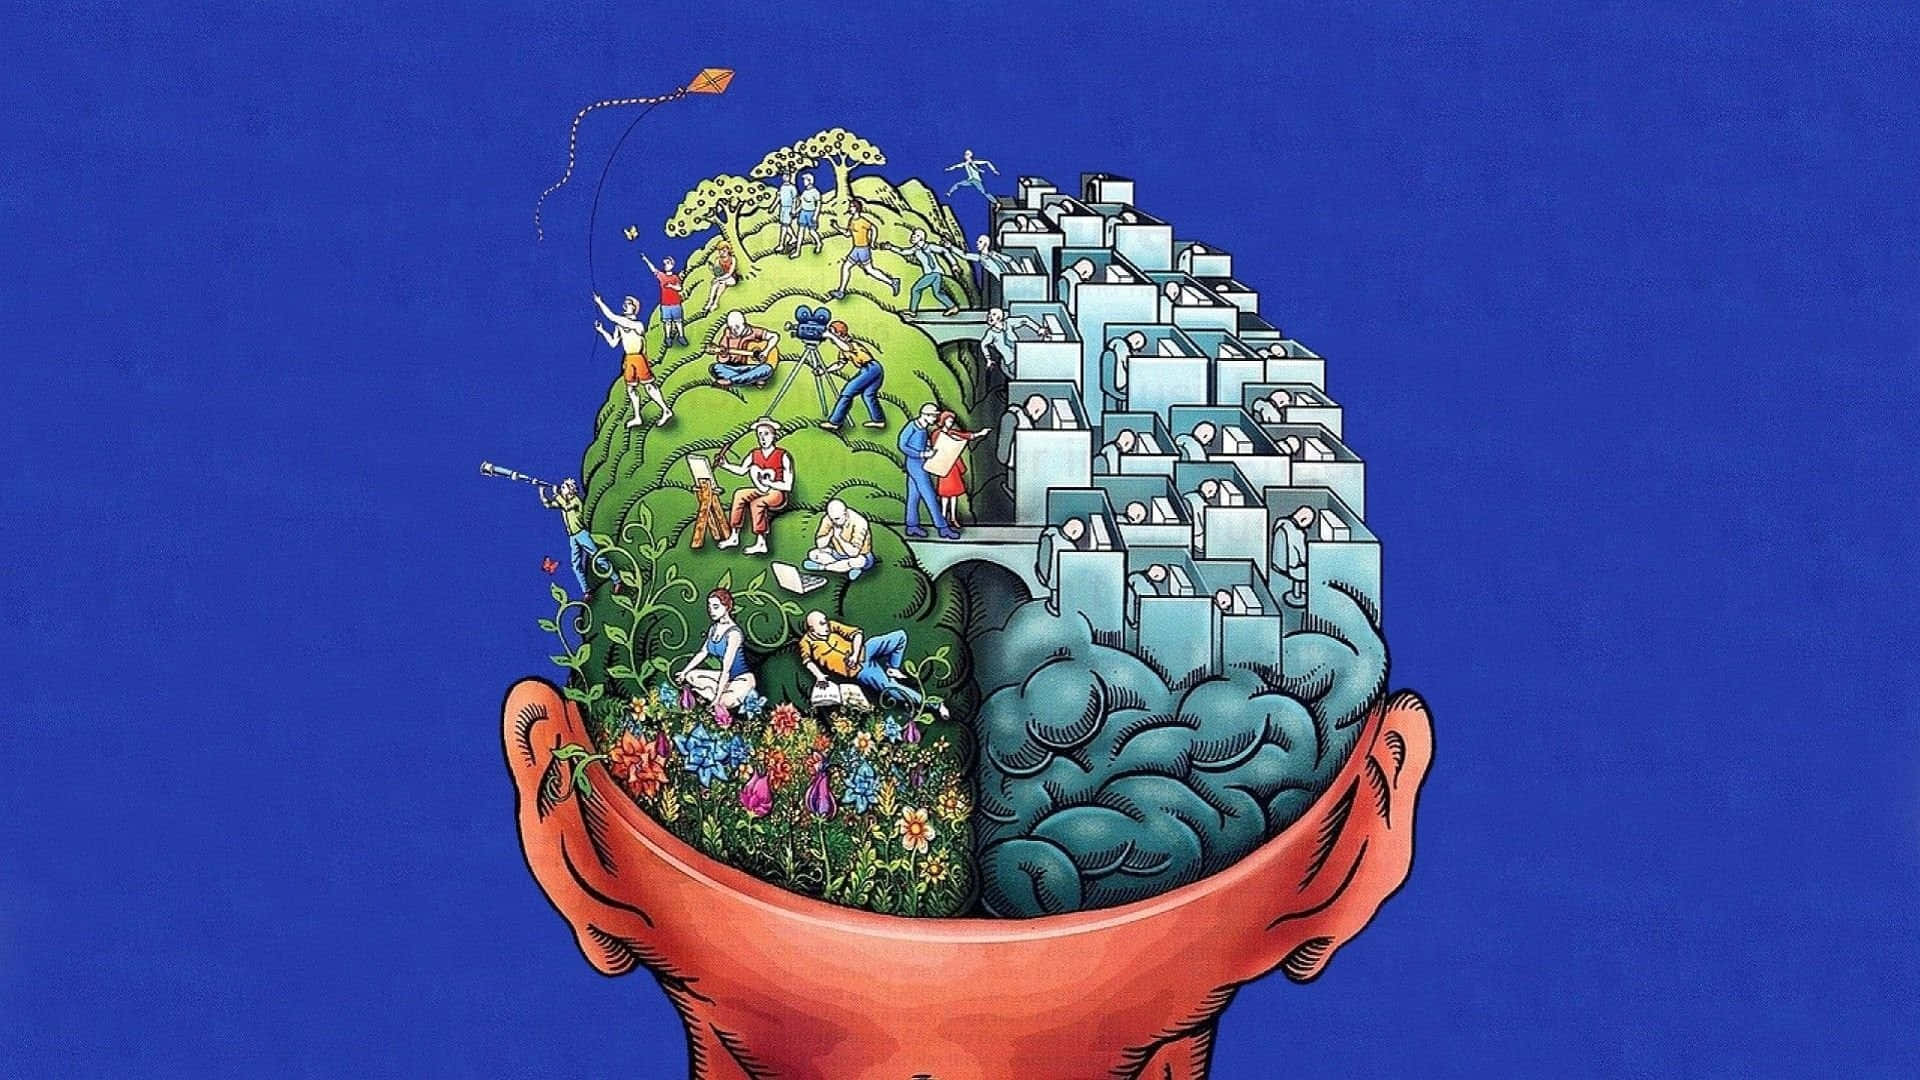 brain art wallpaper